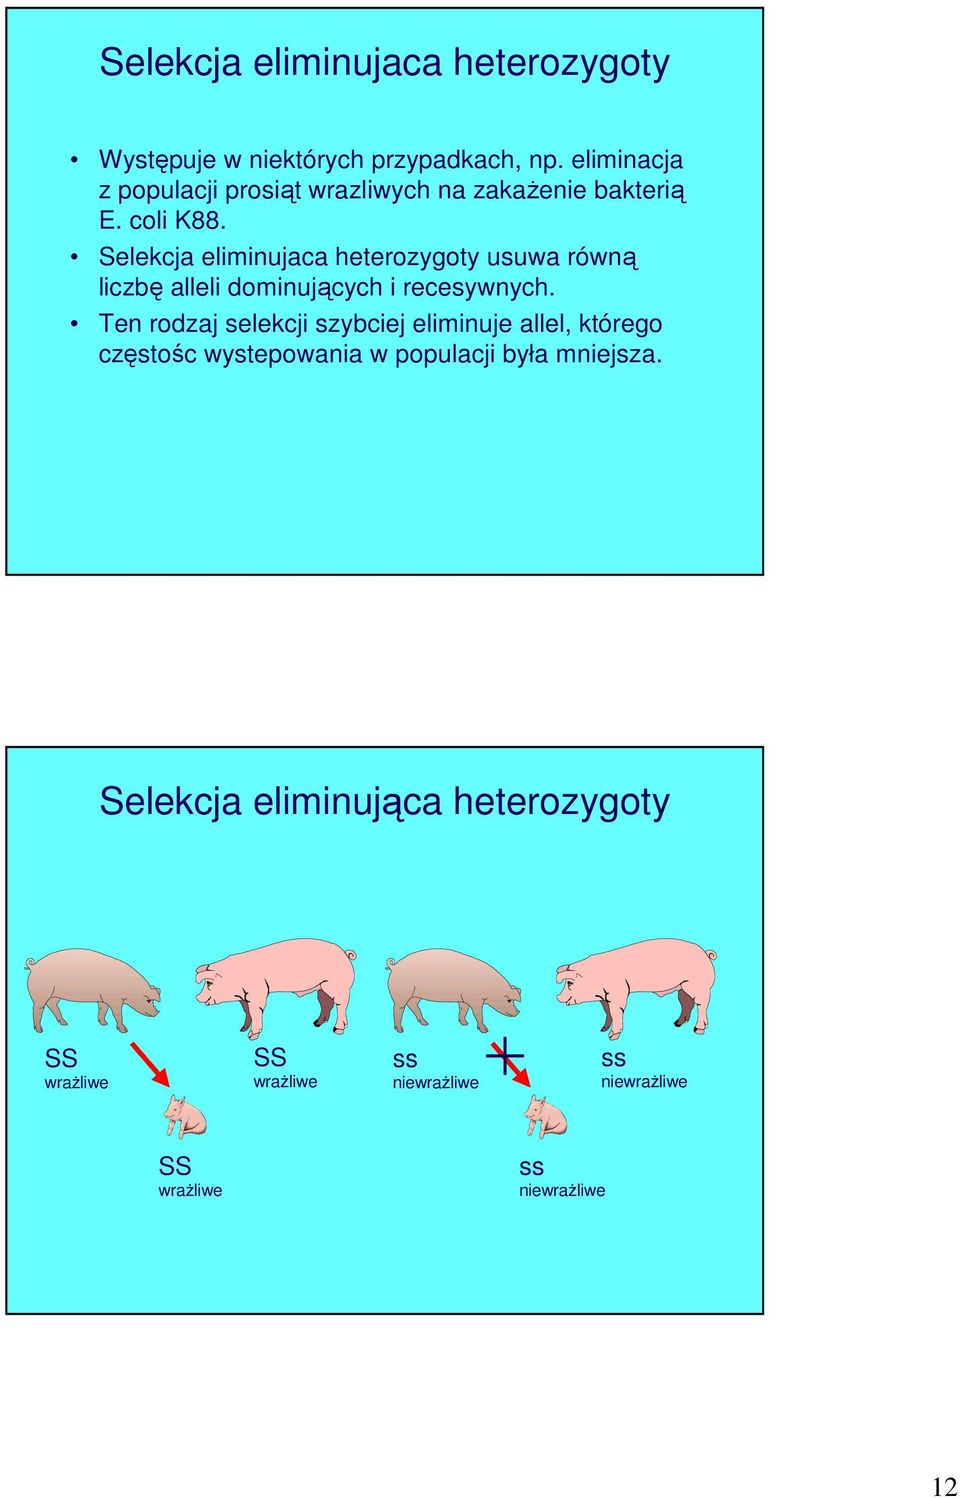 Selekcja eliminujaca heterozygoty usuwa równą liczbę alleli dominujących i recesywnych.